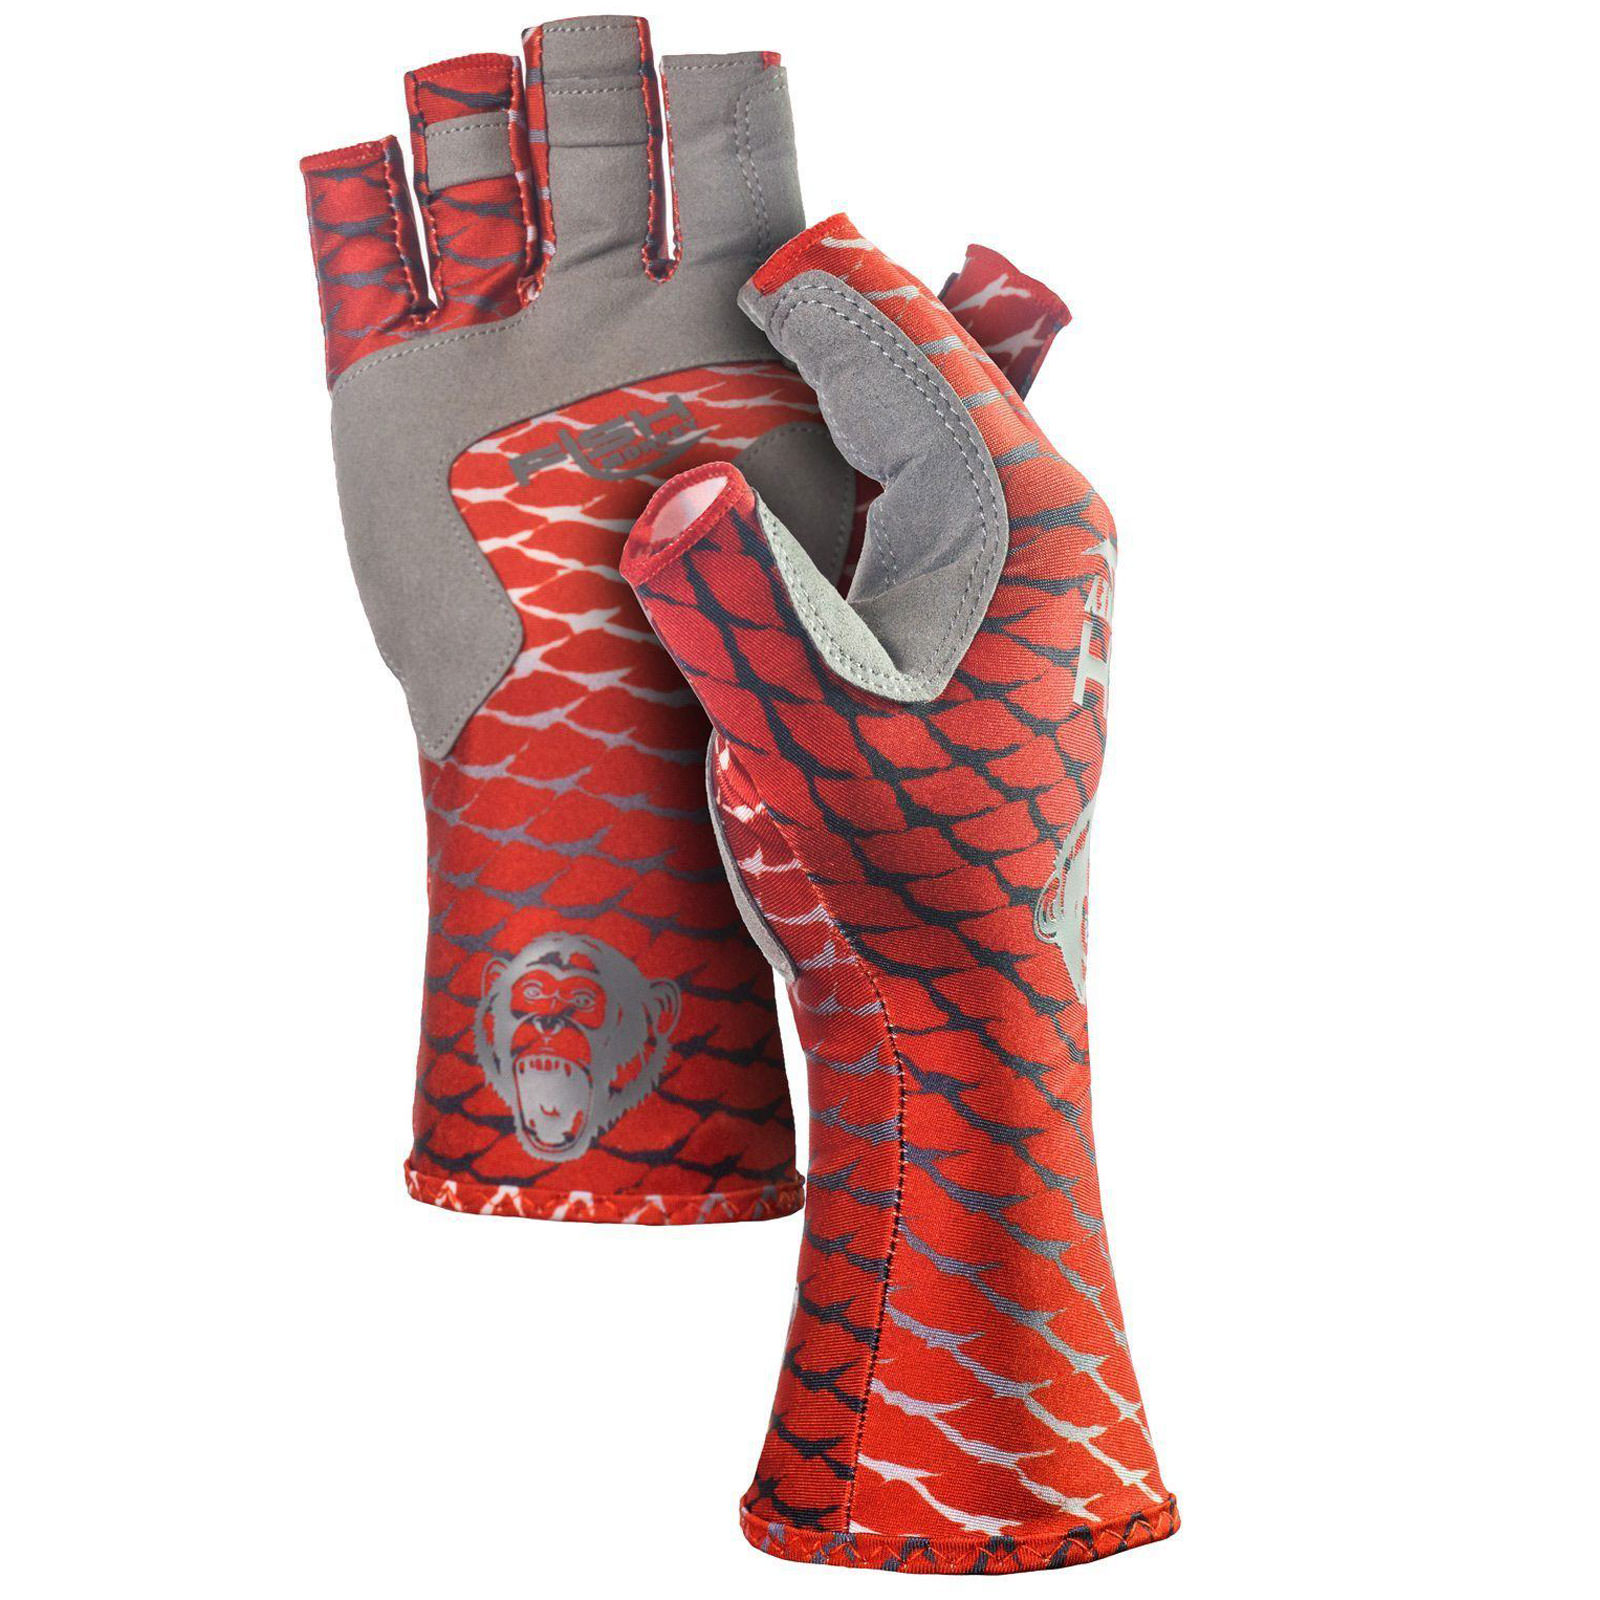 Fish Monkey Gloves Half-Finger Guide Gloves - AvidMax